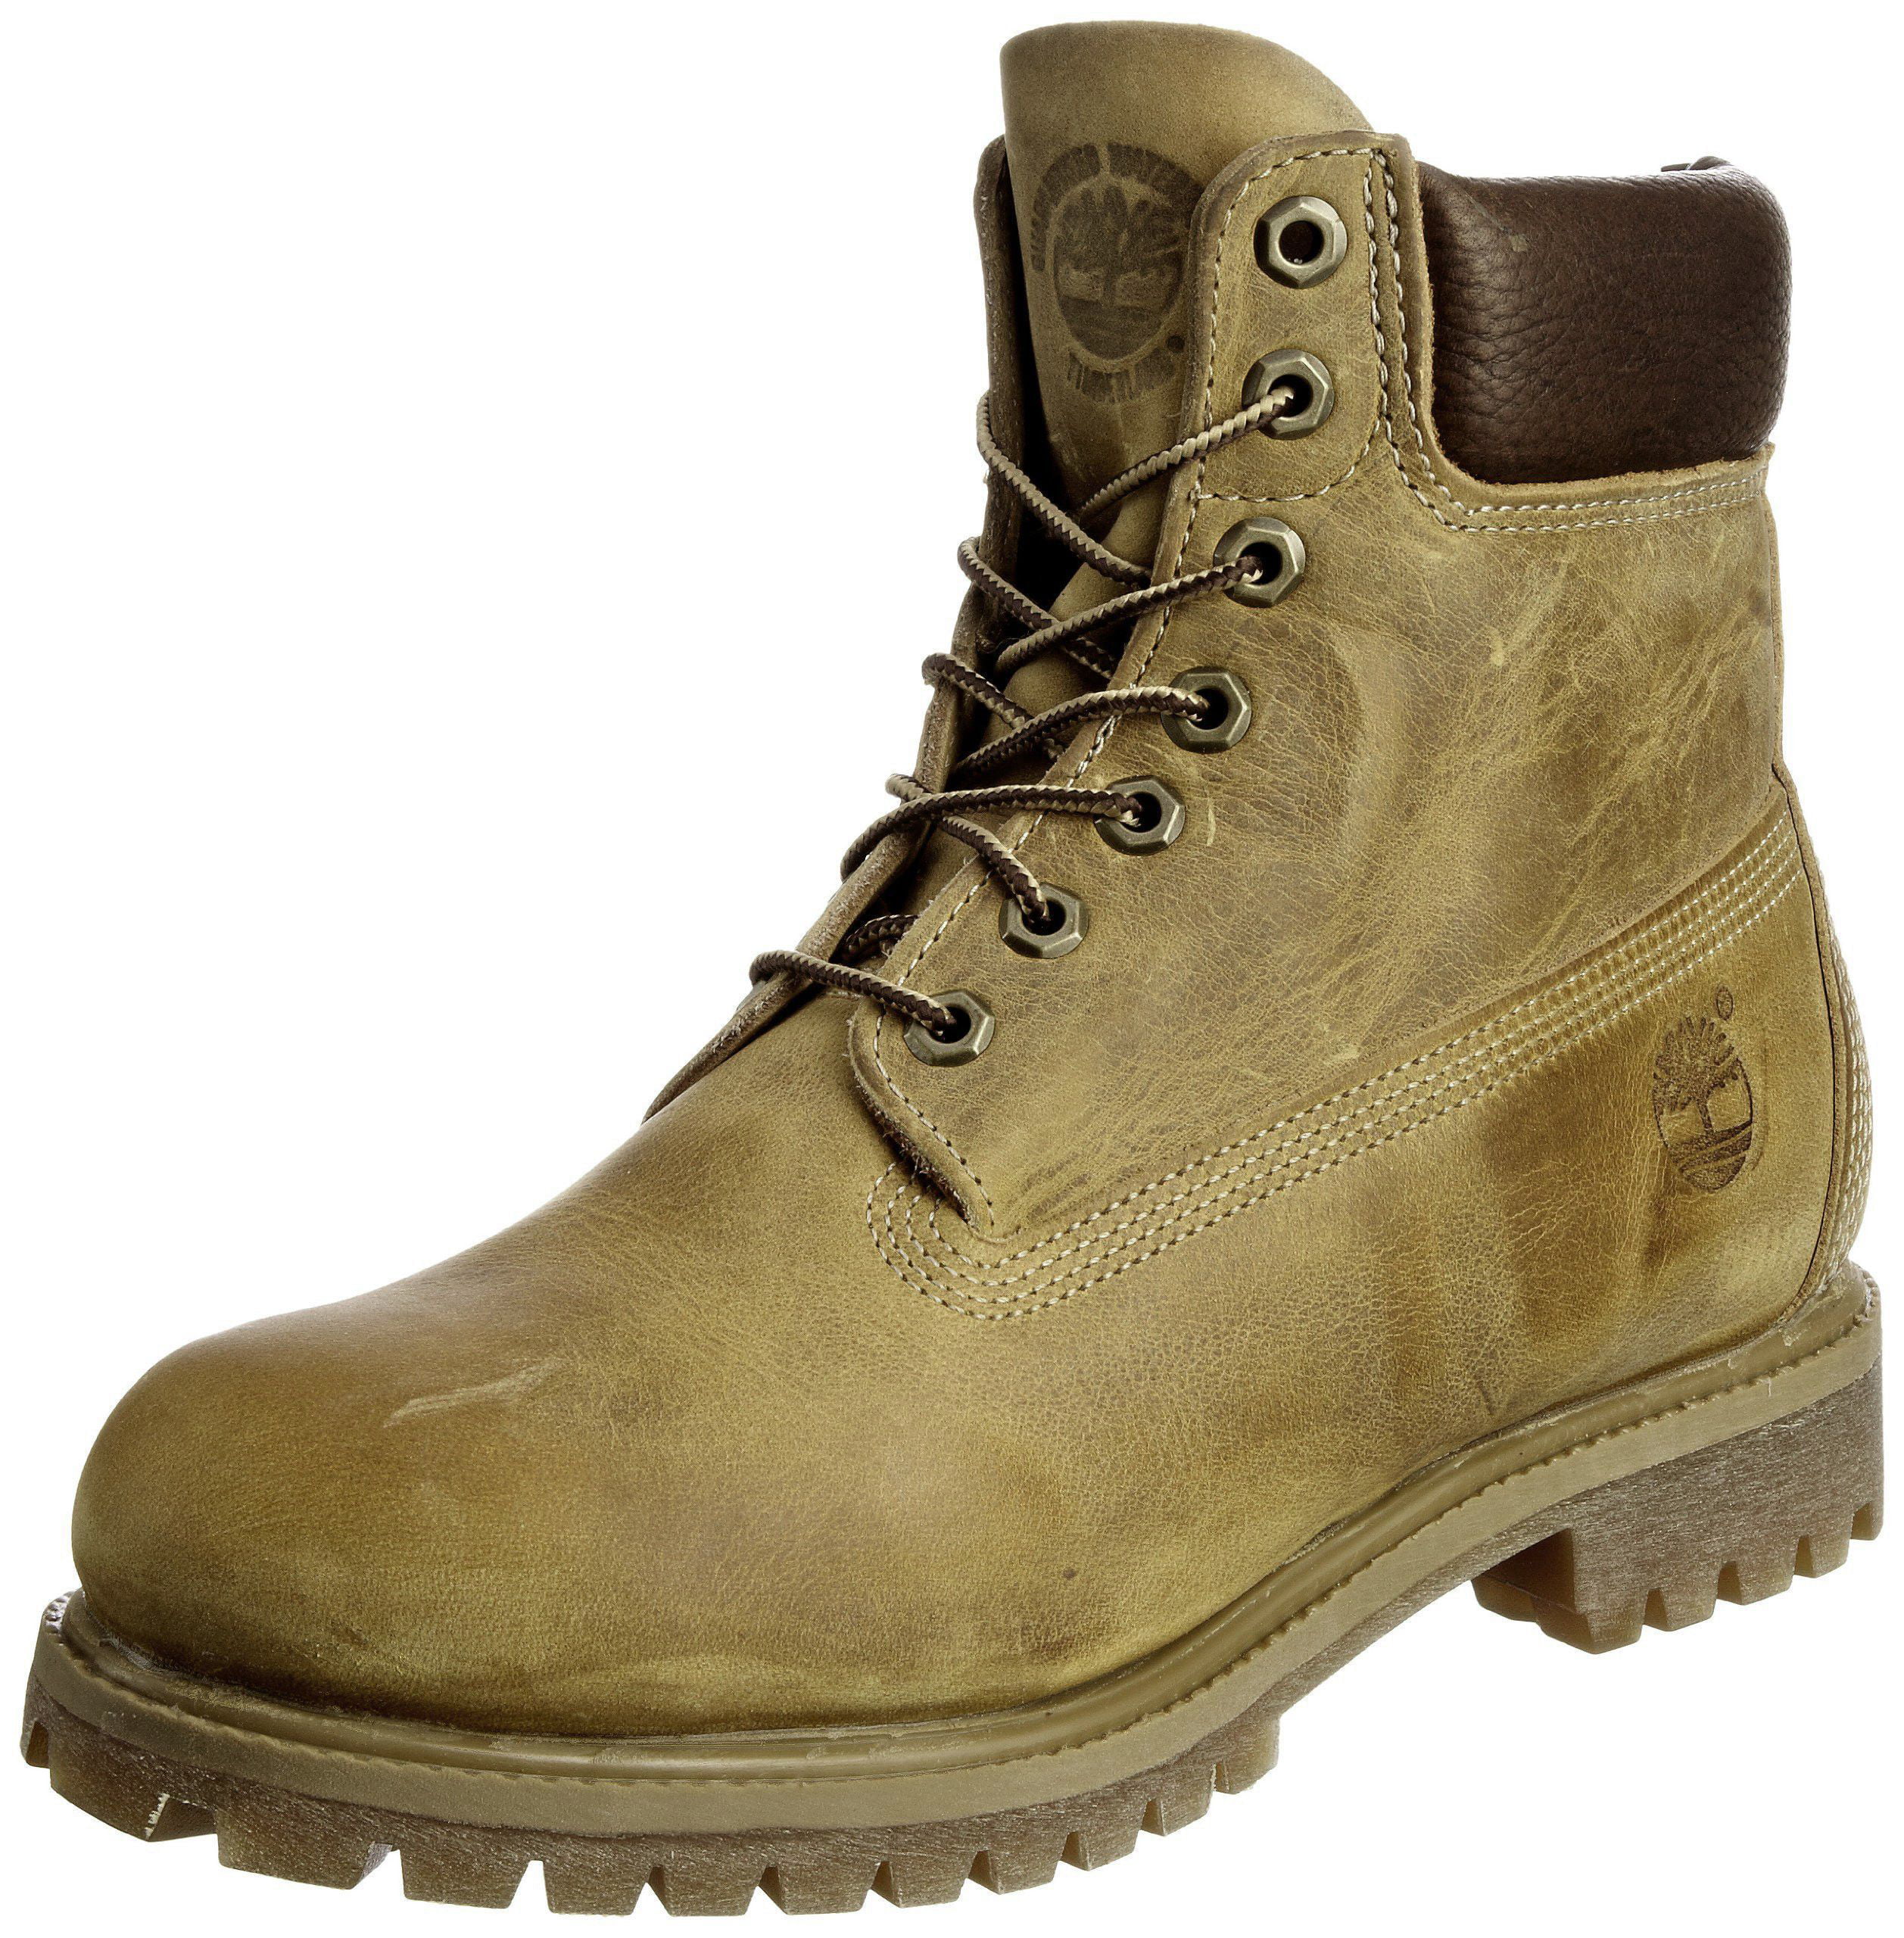 Heritage Waterproof Men's Boots Size 8.5M - Walmart.com